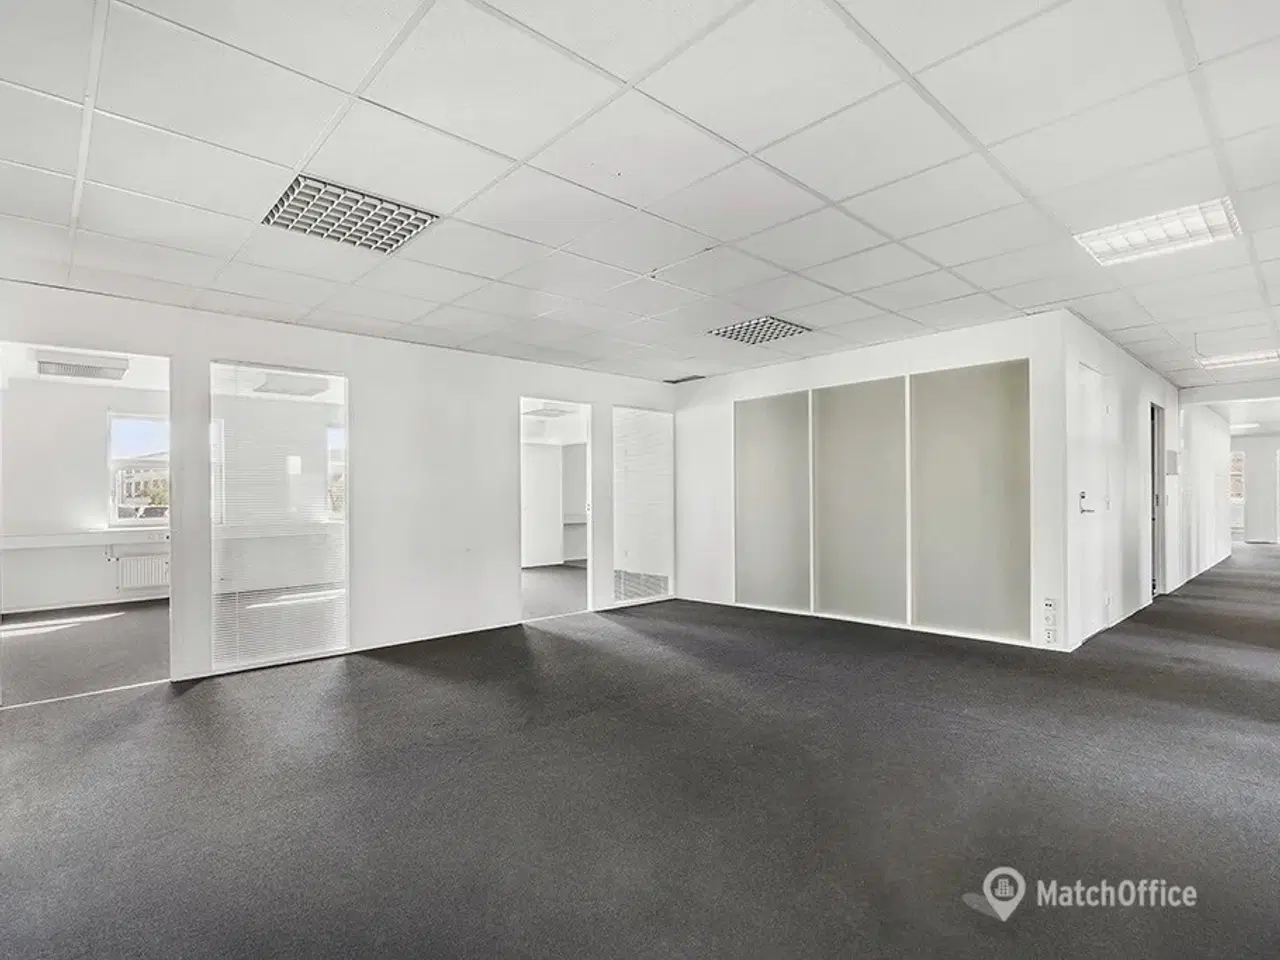 Billede 2 - Velindrettet kontorlejemål med mødelokale på 367 m2 tilbydes i præsentabel ejendom med central placering i Gladsaxe Erhvervsby.